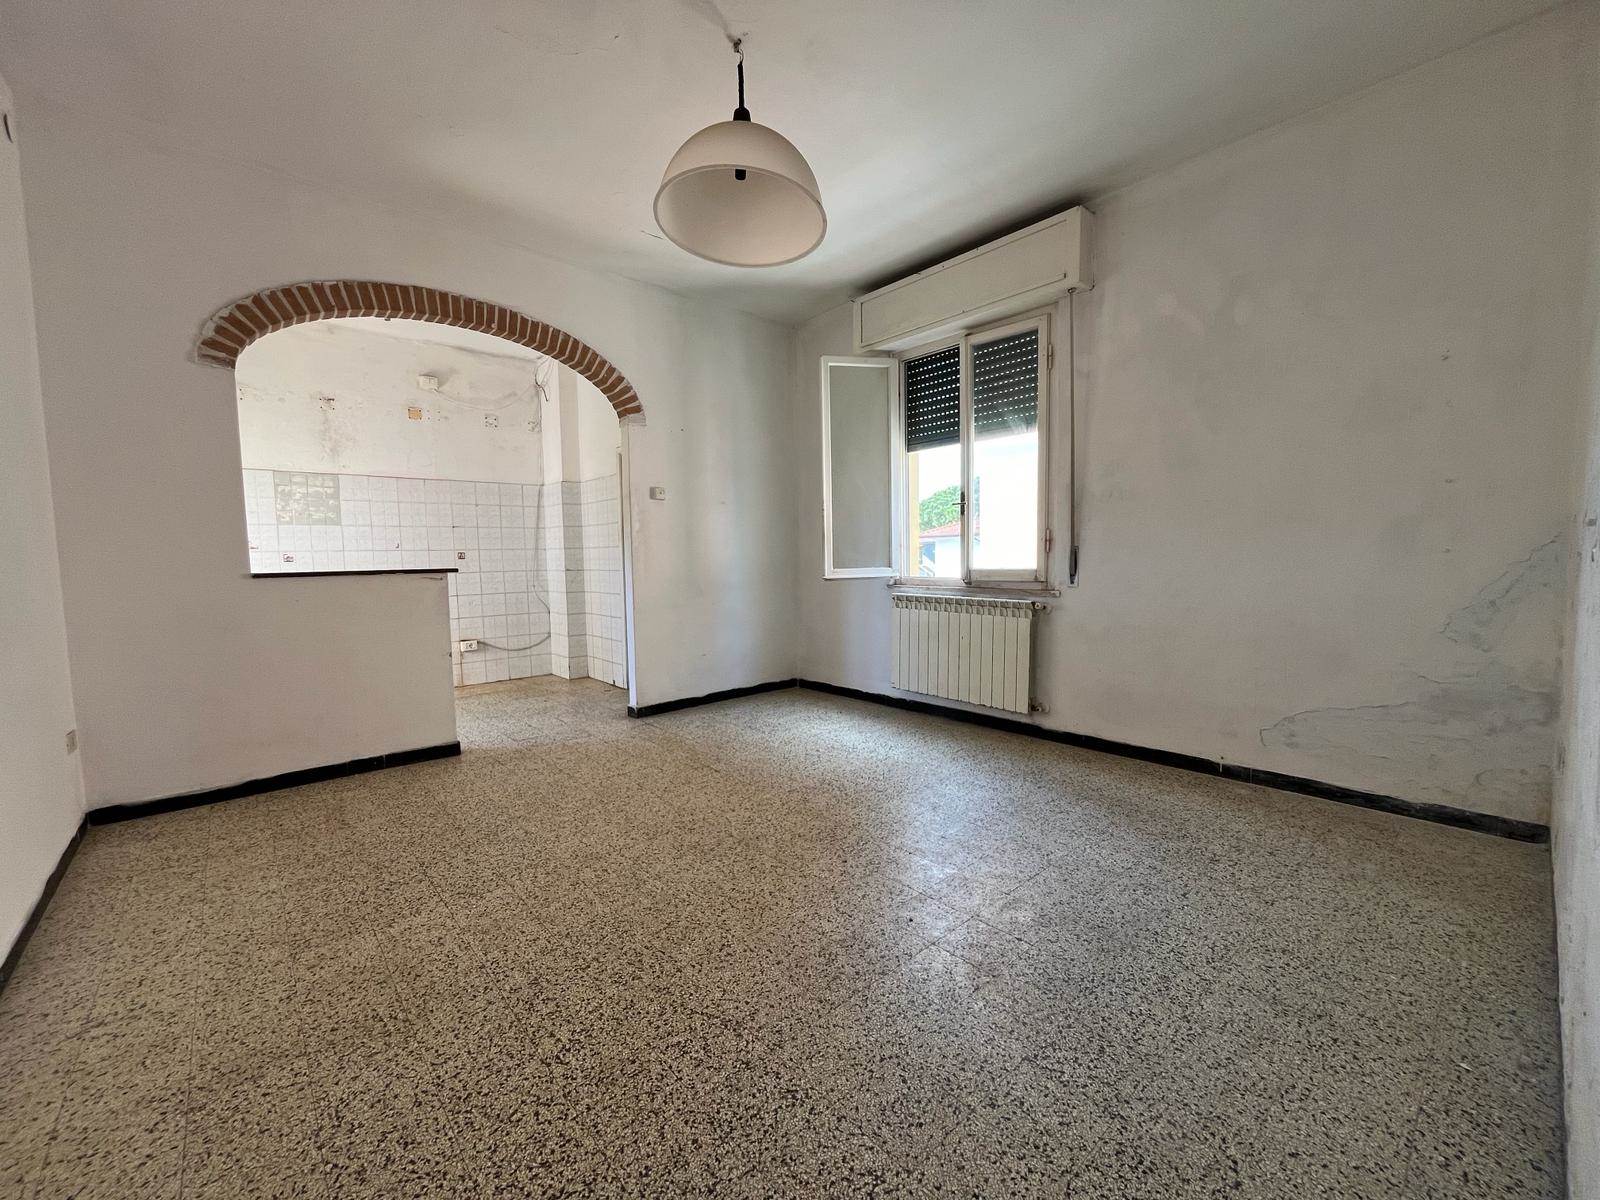 Appartamento in vendita a Bibbona, 3 locali, zona alifornia, prezzo € 95.000 | PortaleAgenzieImmobiliari.it